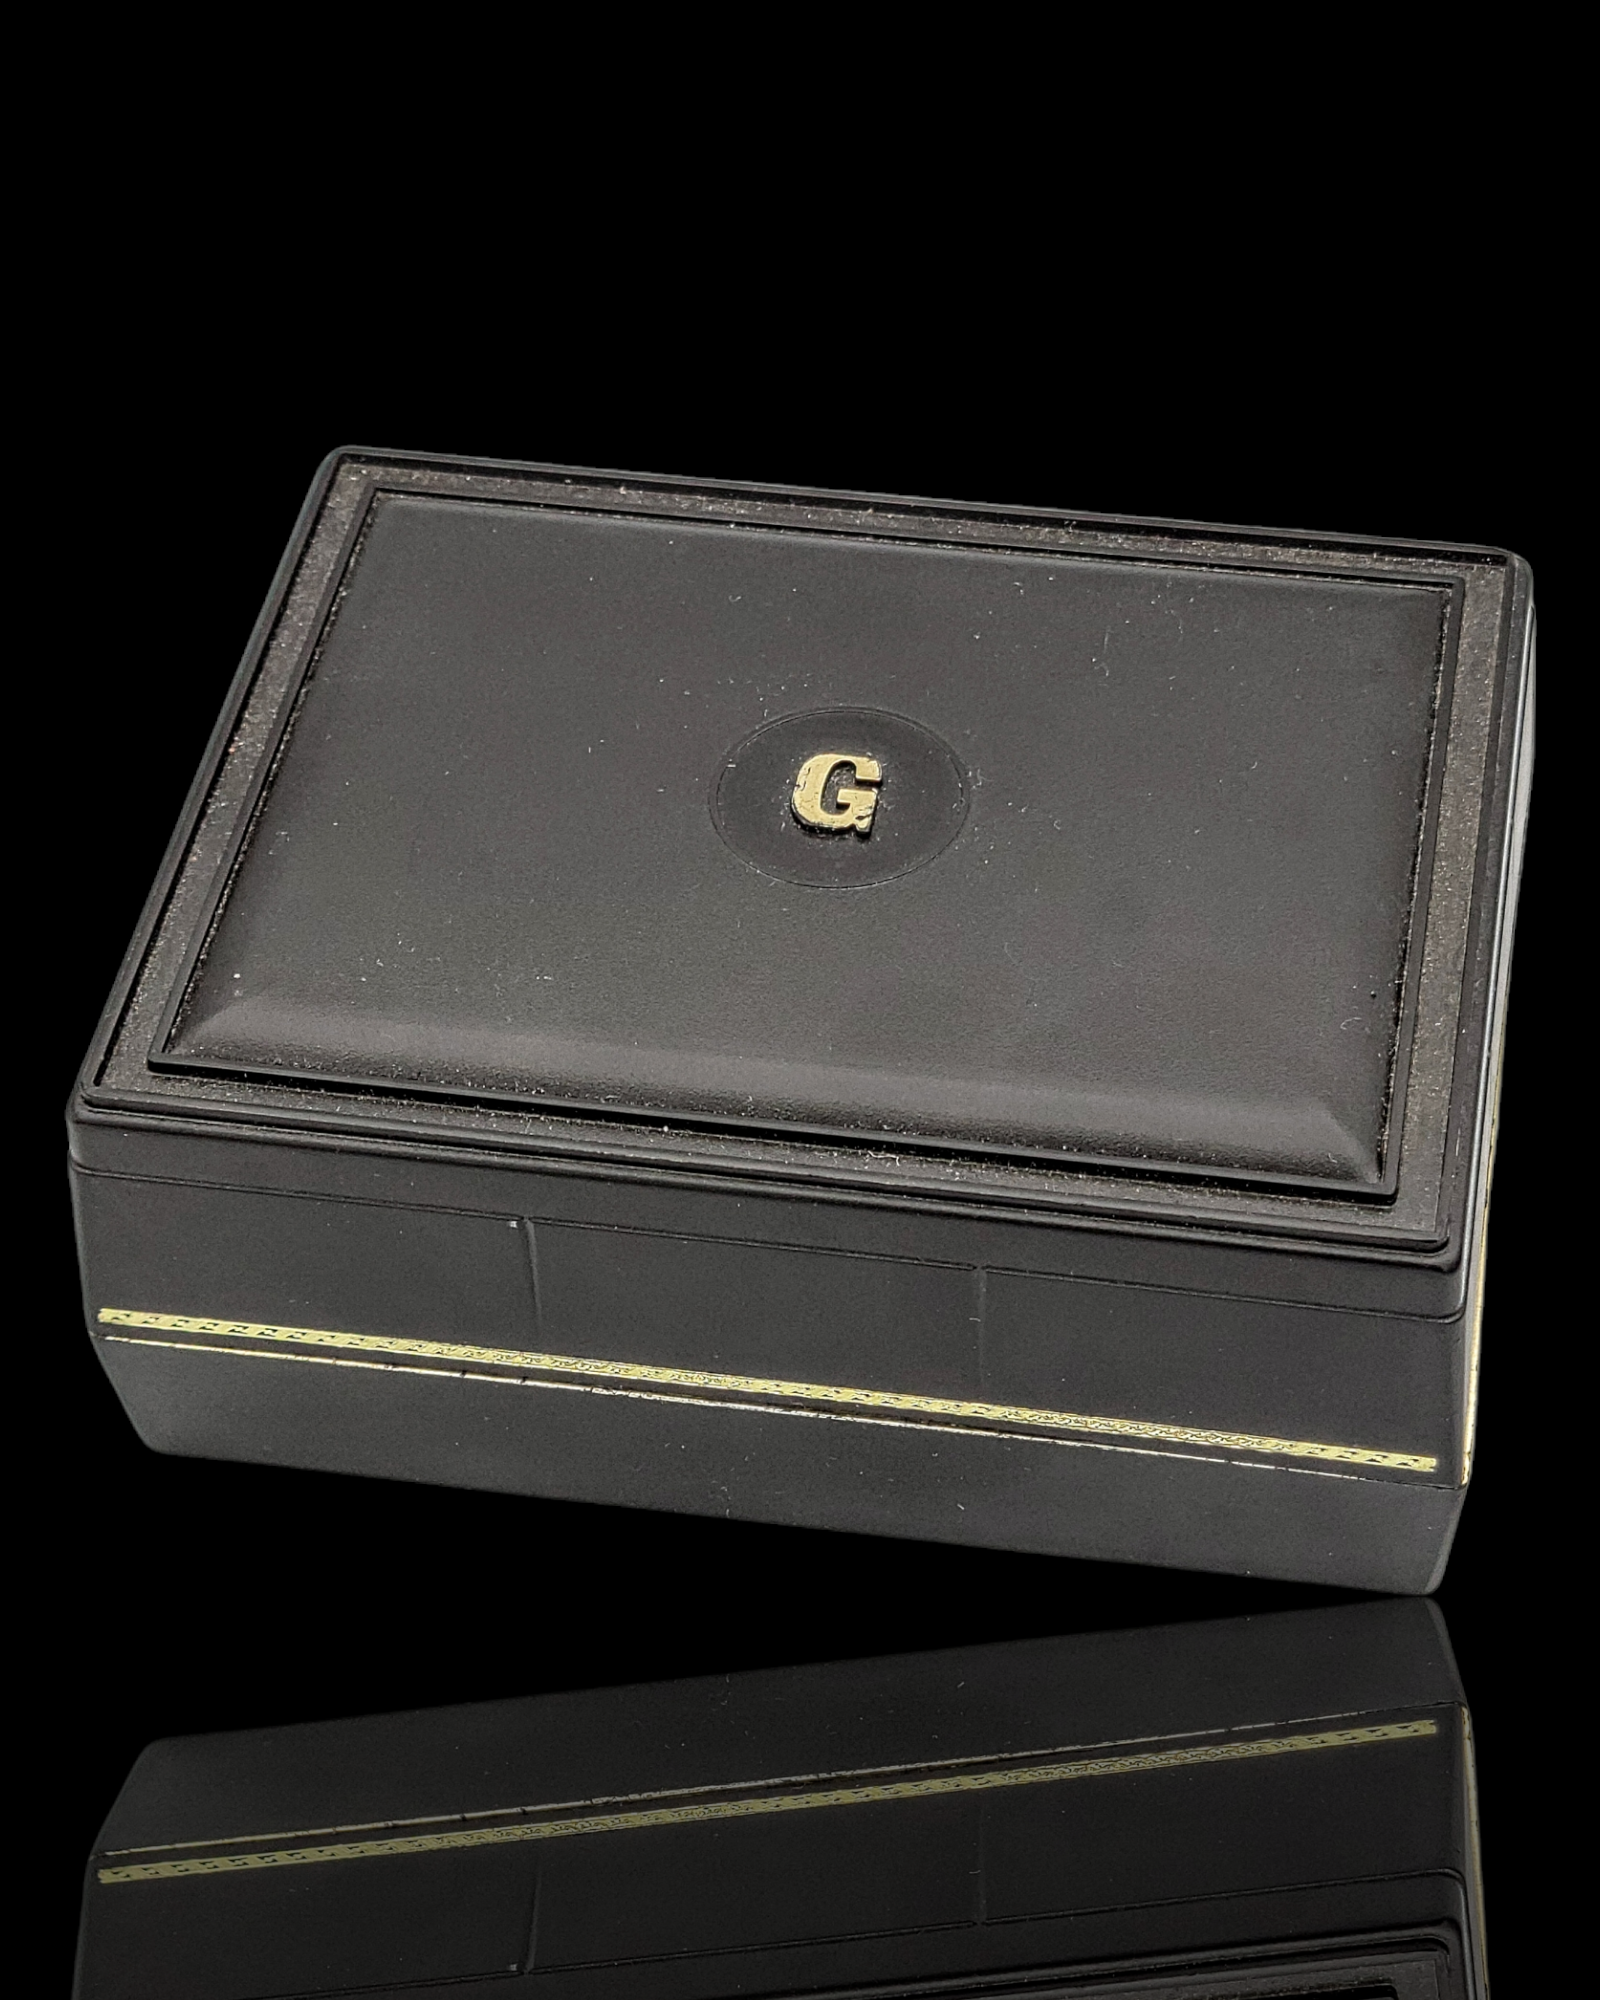 GRUEN Precision Watch 17 Jewels Cal. 512 CD Swiss - In Box!